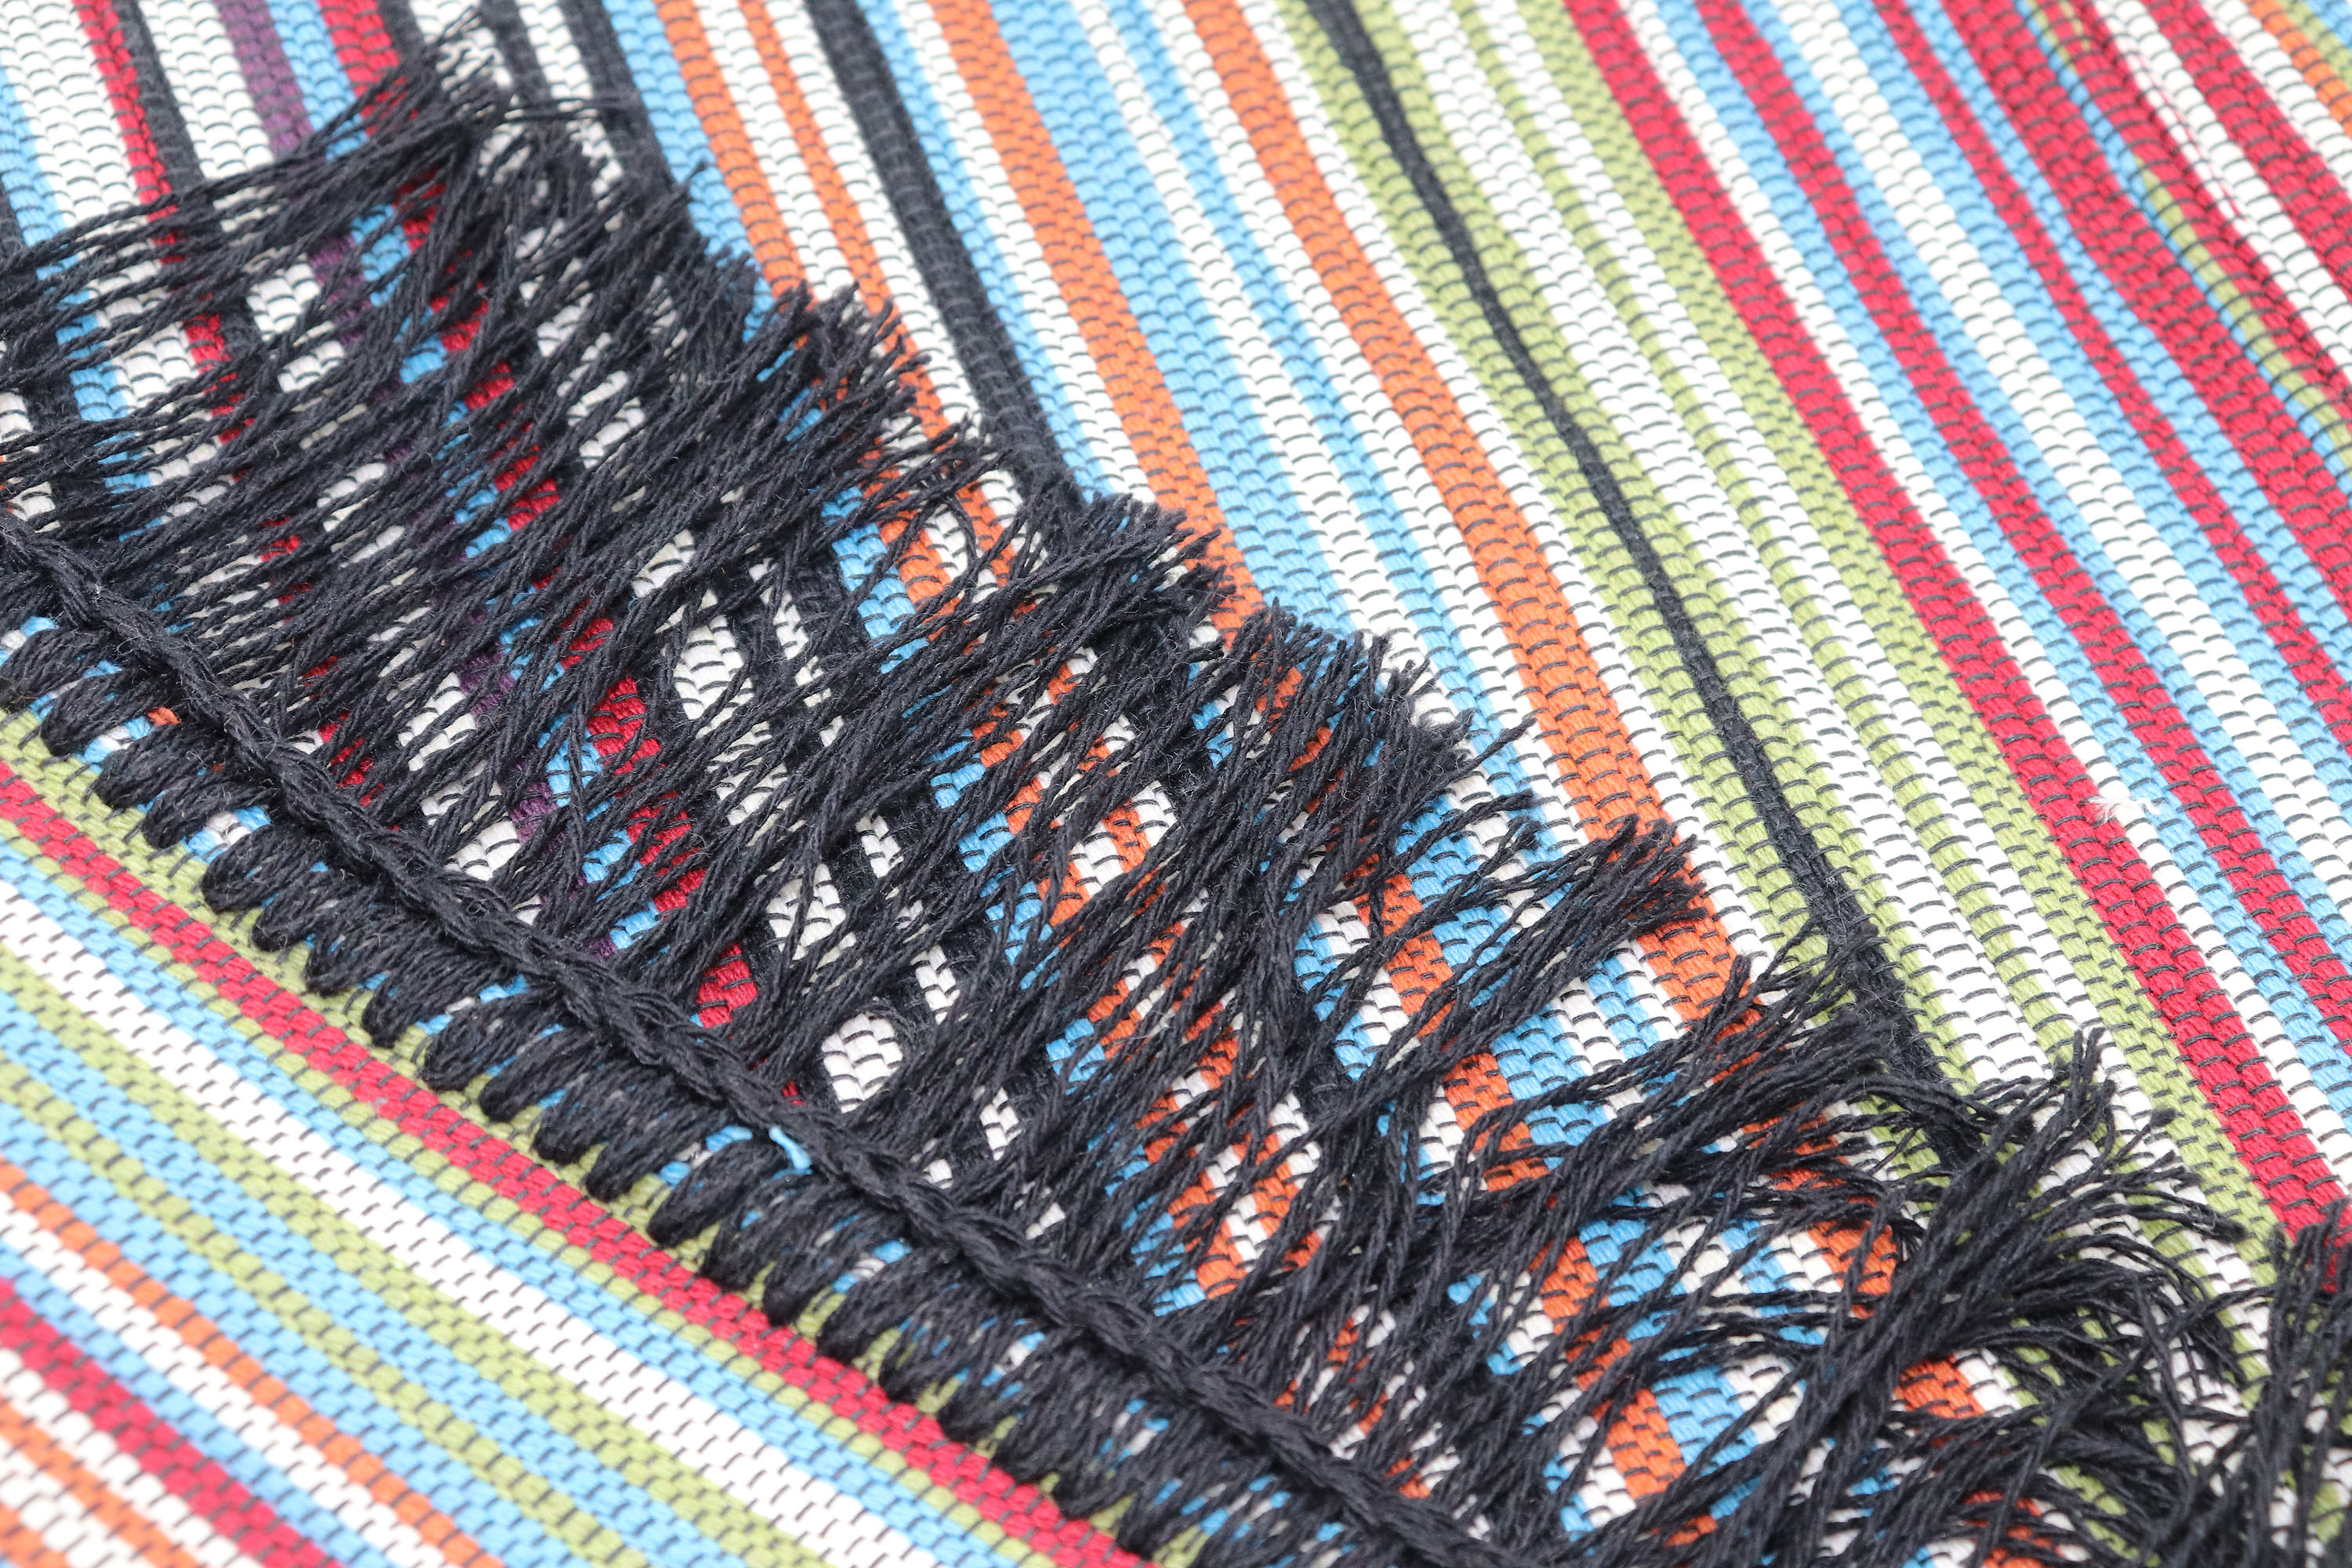 Biederlack Teppich Läufer 'Casa Stripe' 80x200 cm bunt kaufen